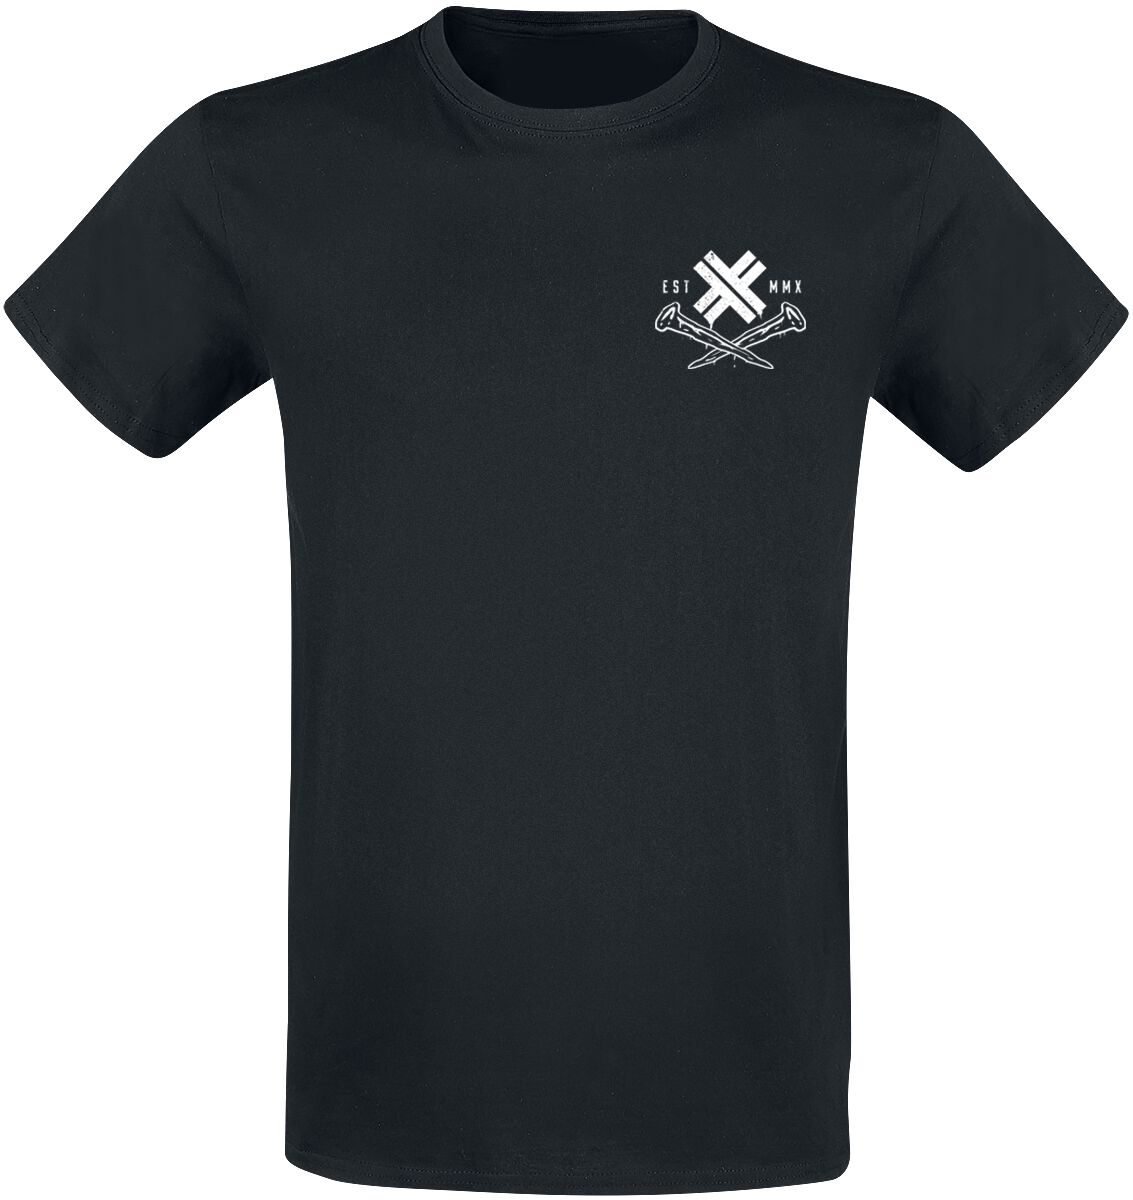 Electric Callboy T-Shirt - Dark Horse - S bis 3XL - für Männer - Größe XL - schwarz  - Lizenziertes Merchandise!